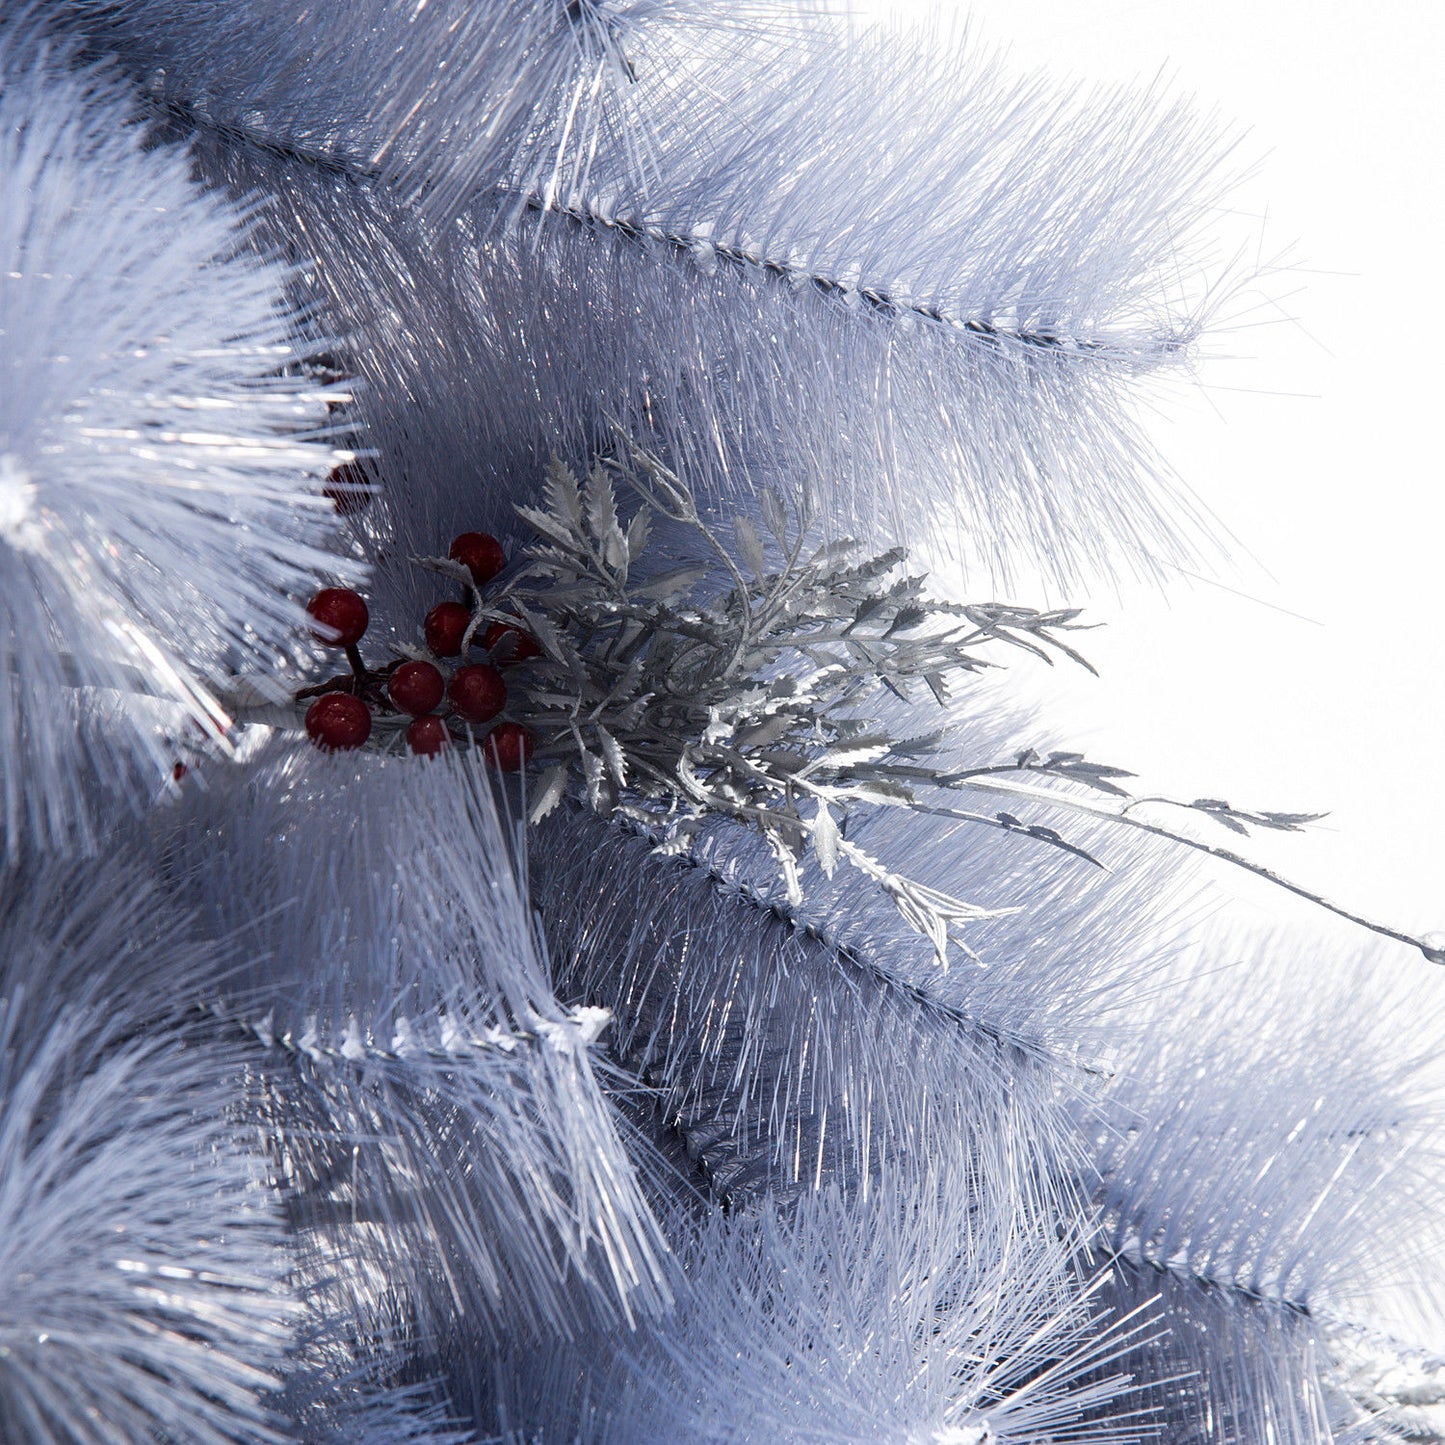 HOMCOM Christmas Tree, 150H cm, W/Replica Berry And Spruce-Grey